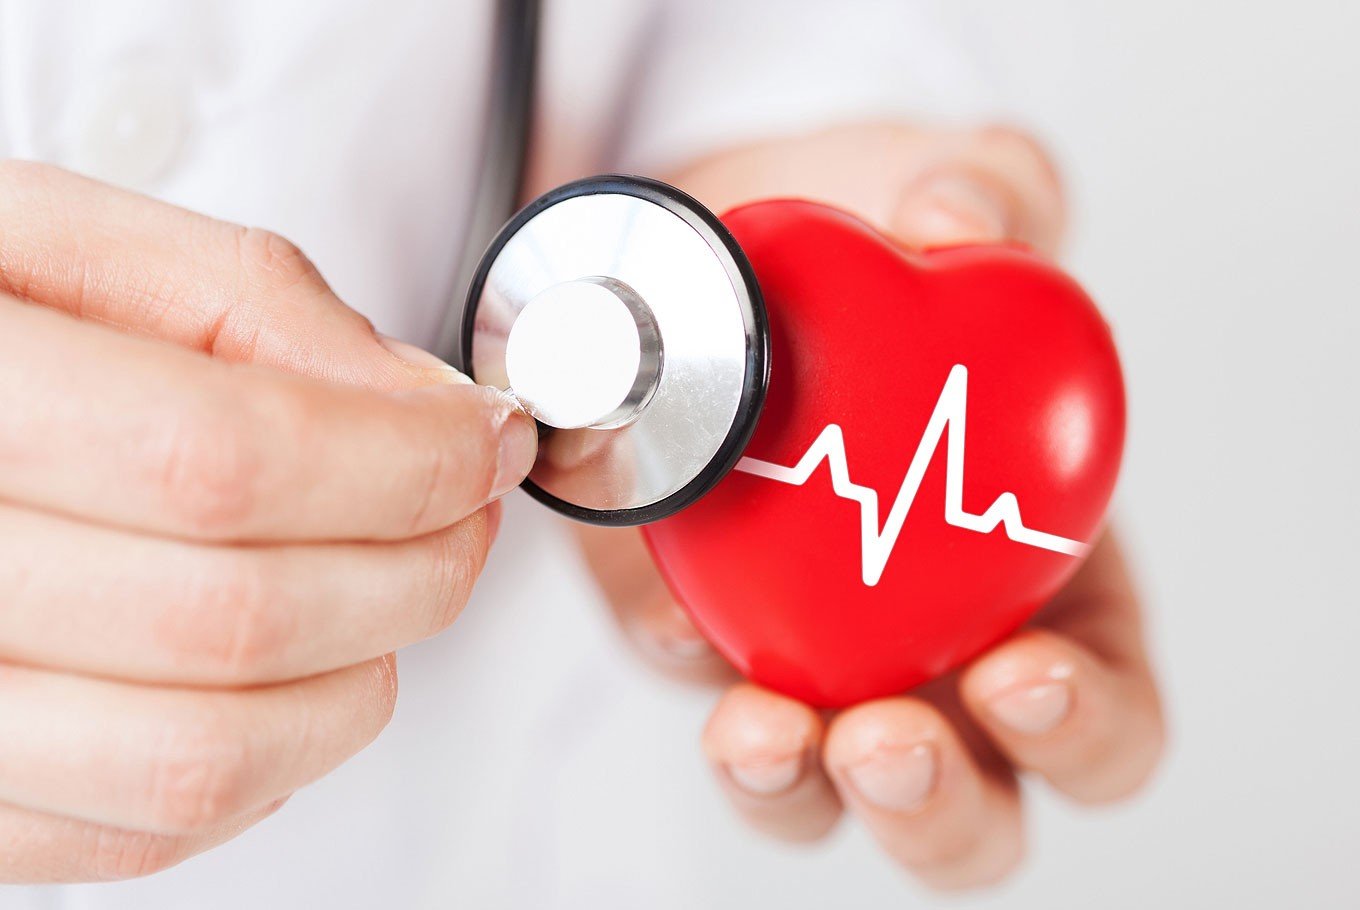 egészségügyi cikkek szívbetegségek)